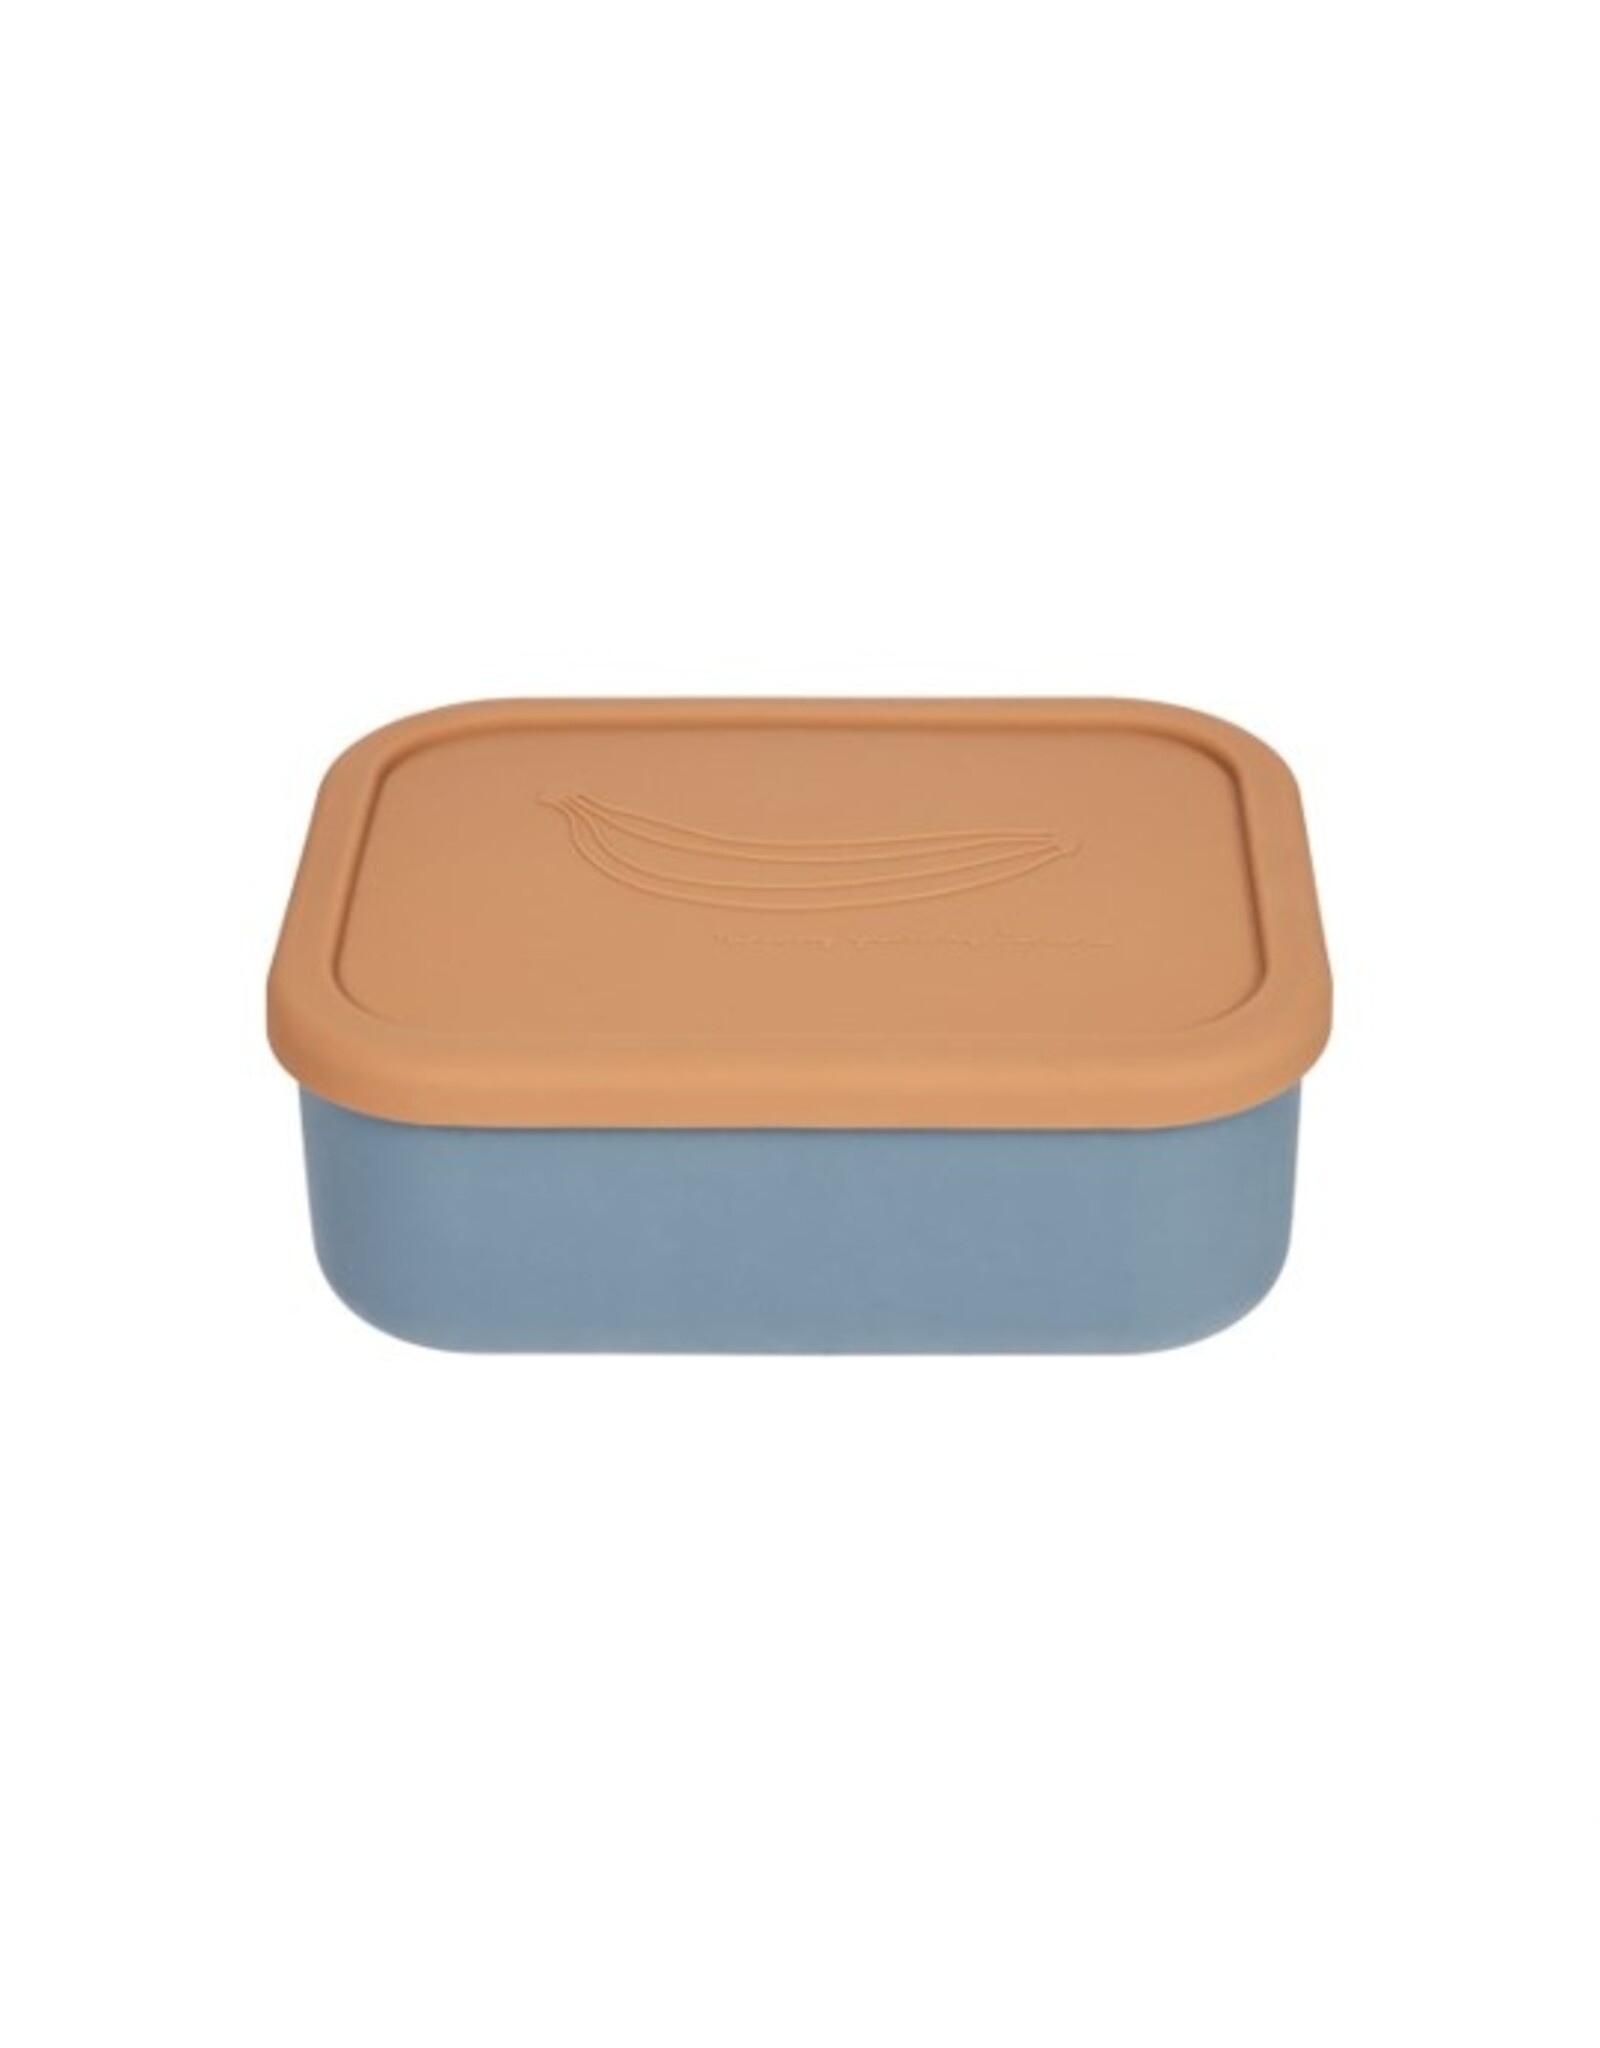 OYOY Lunch box Yummy - Fudge/blue - large